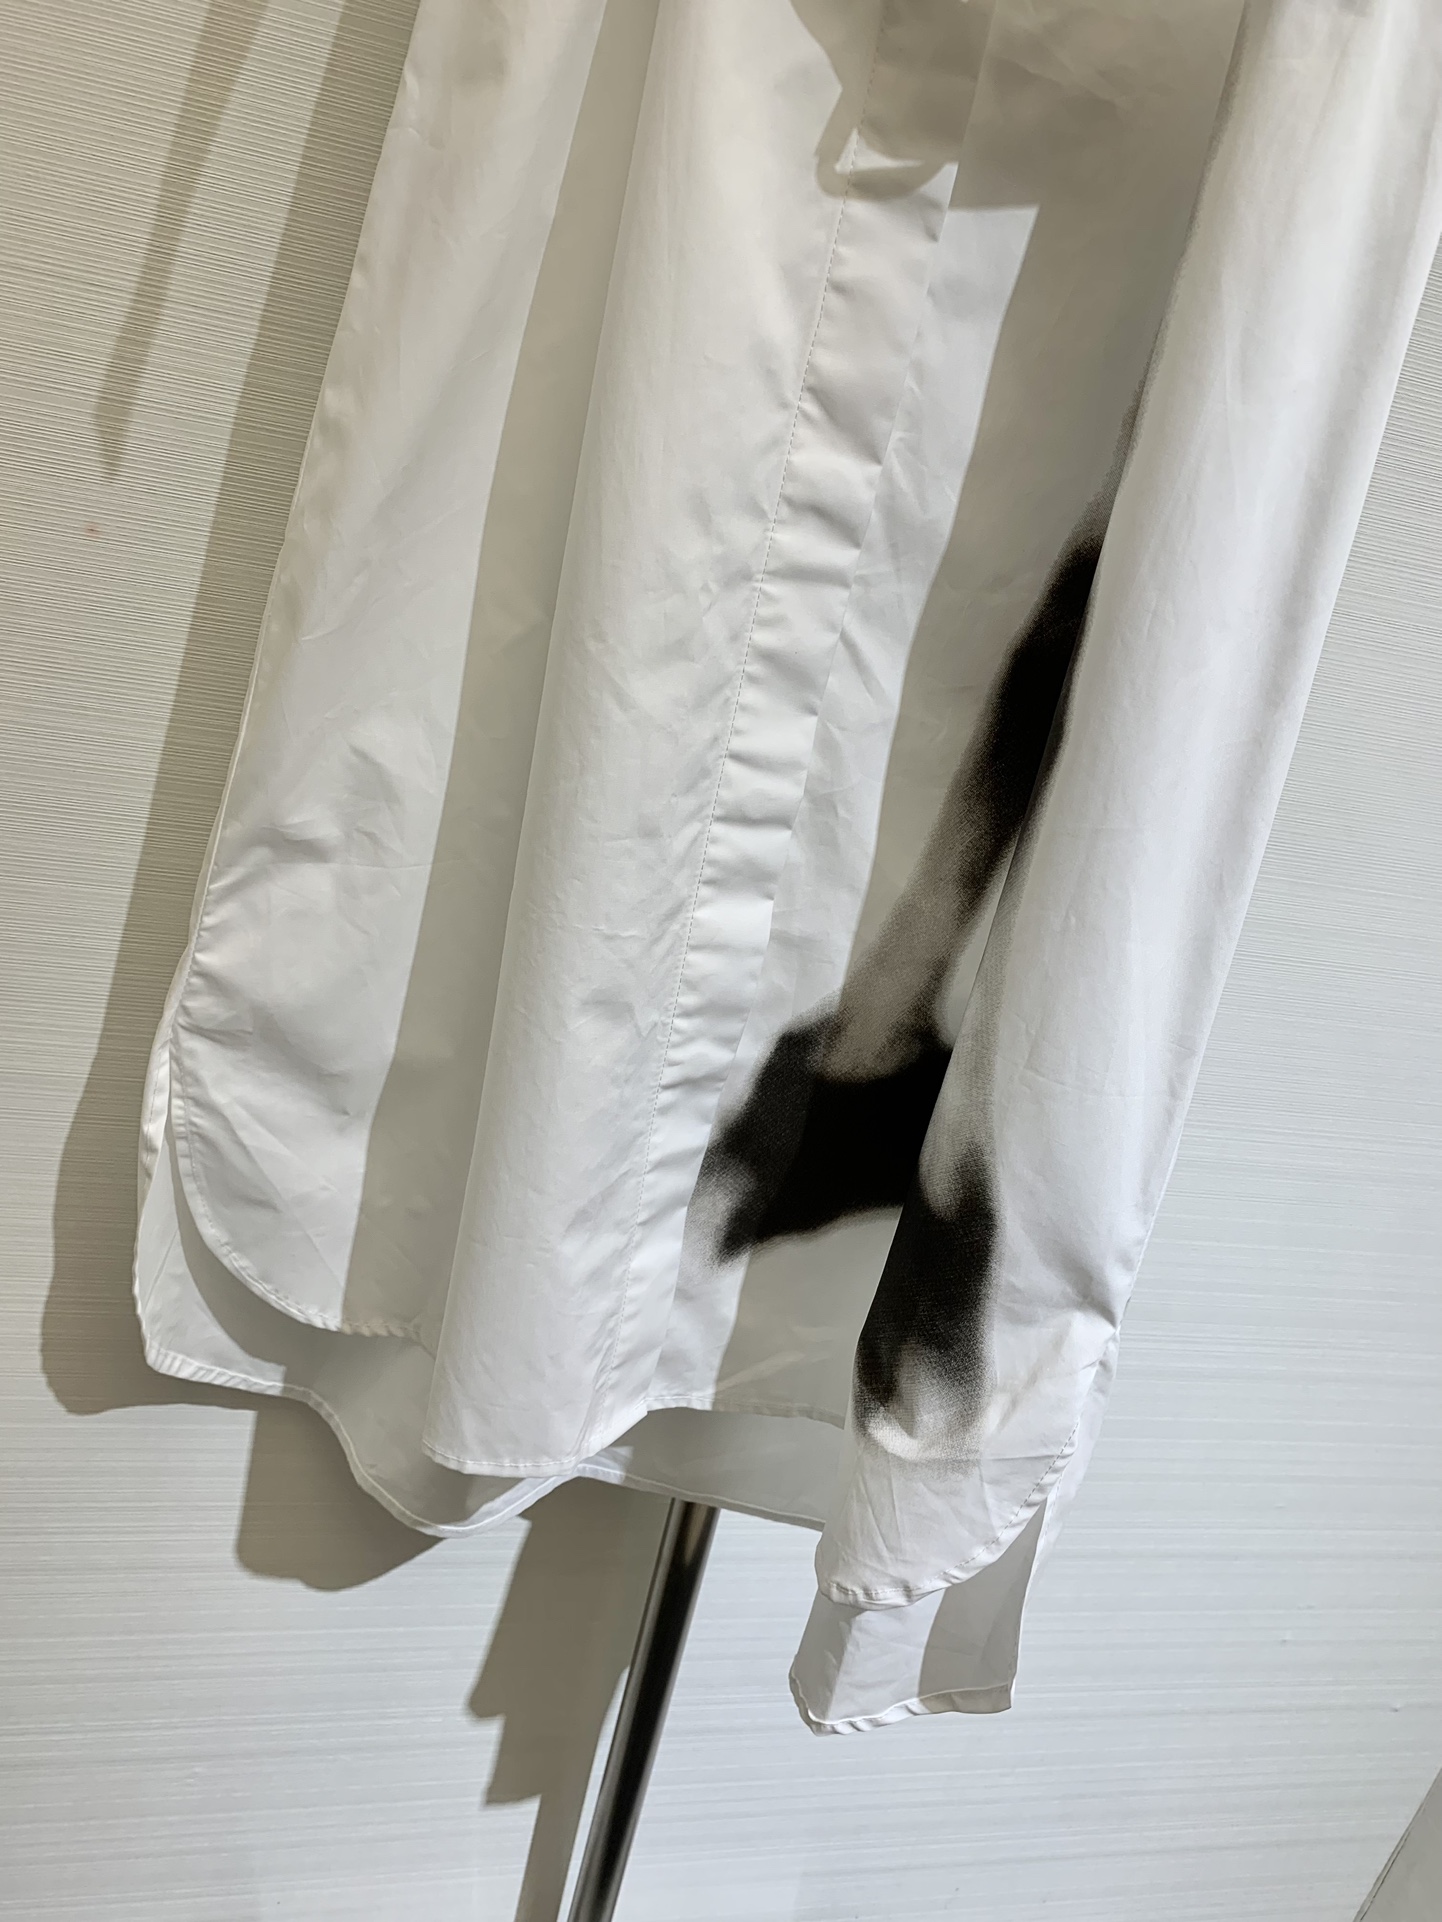 橋本環奈 ディオールワンピースコピー スカート 短袖 軽量 夏服 柔らかい レディース 人気新作 純綿 ホワイト_5